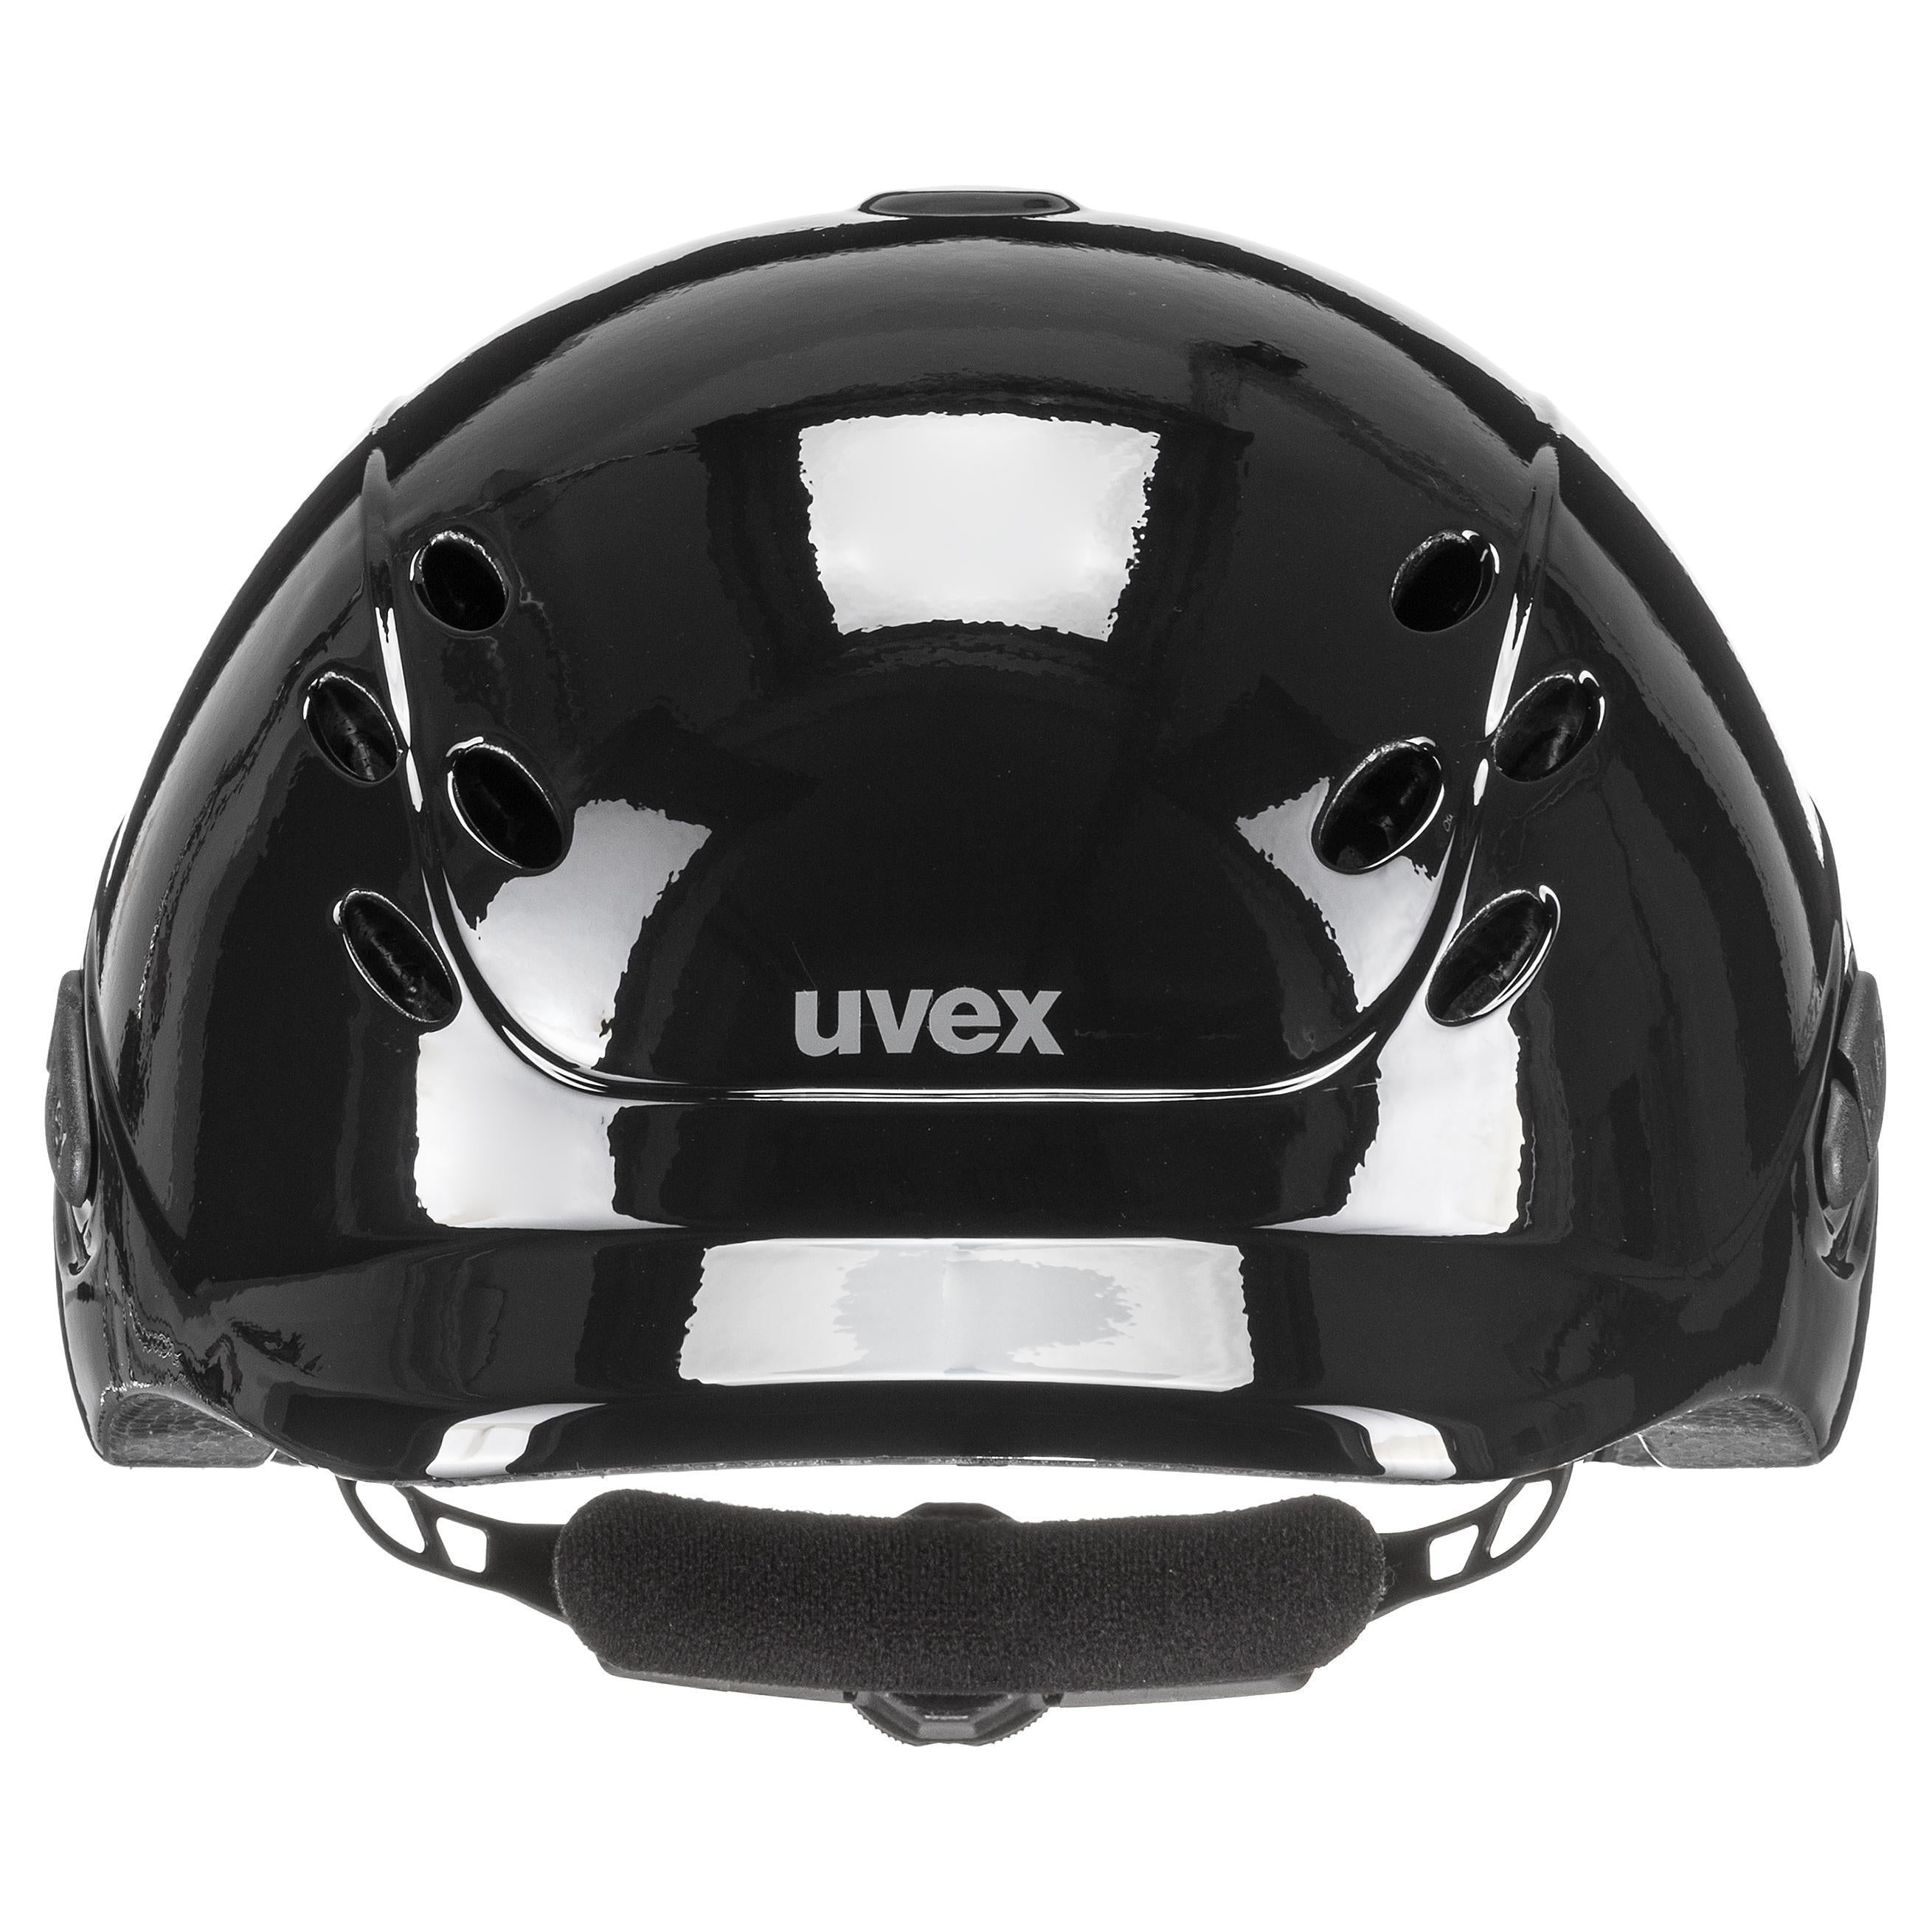 Uvex Cappello da equitazione per bambini regolabile taglia 49-54 cm onyxx tinta unita nero lucido (NUOVO)